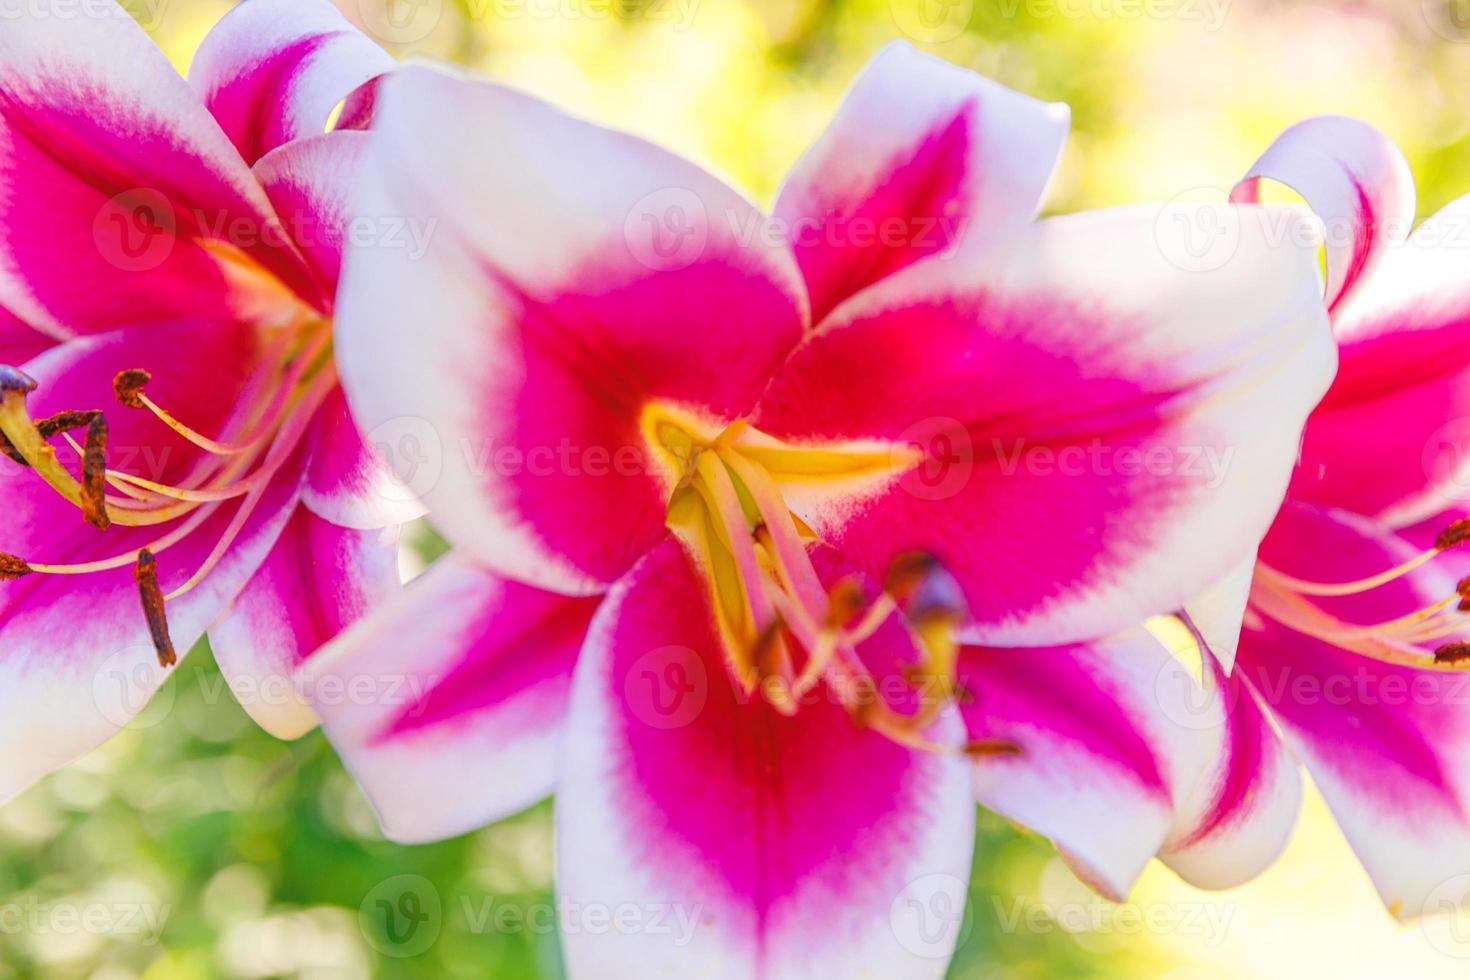 linda flor de lírio branco rosa close-up detalhe no horário de verão. fundo com buquê de flores. jardim ou parque de florescência de primavera floral natural inspirador. conceito de natureza ecologia. foto